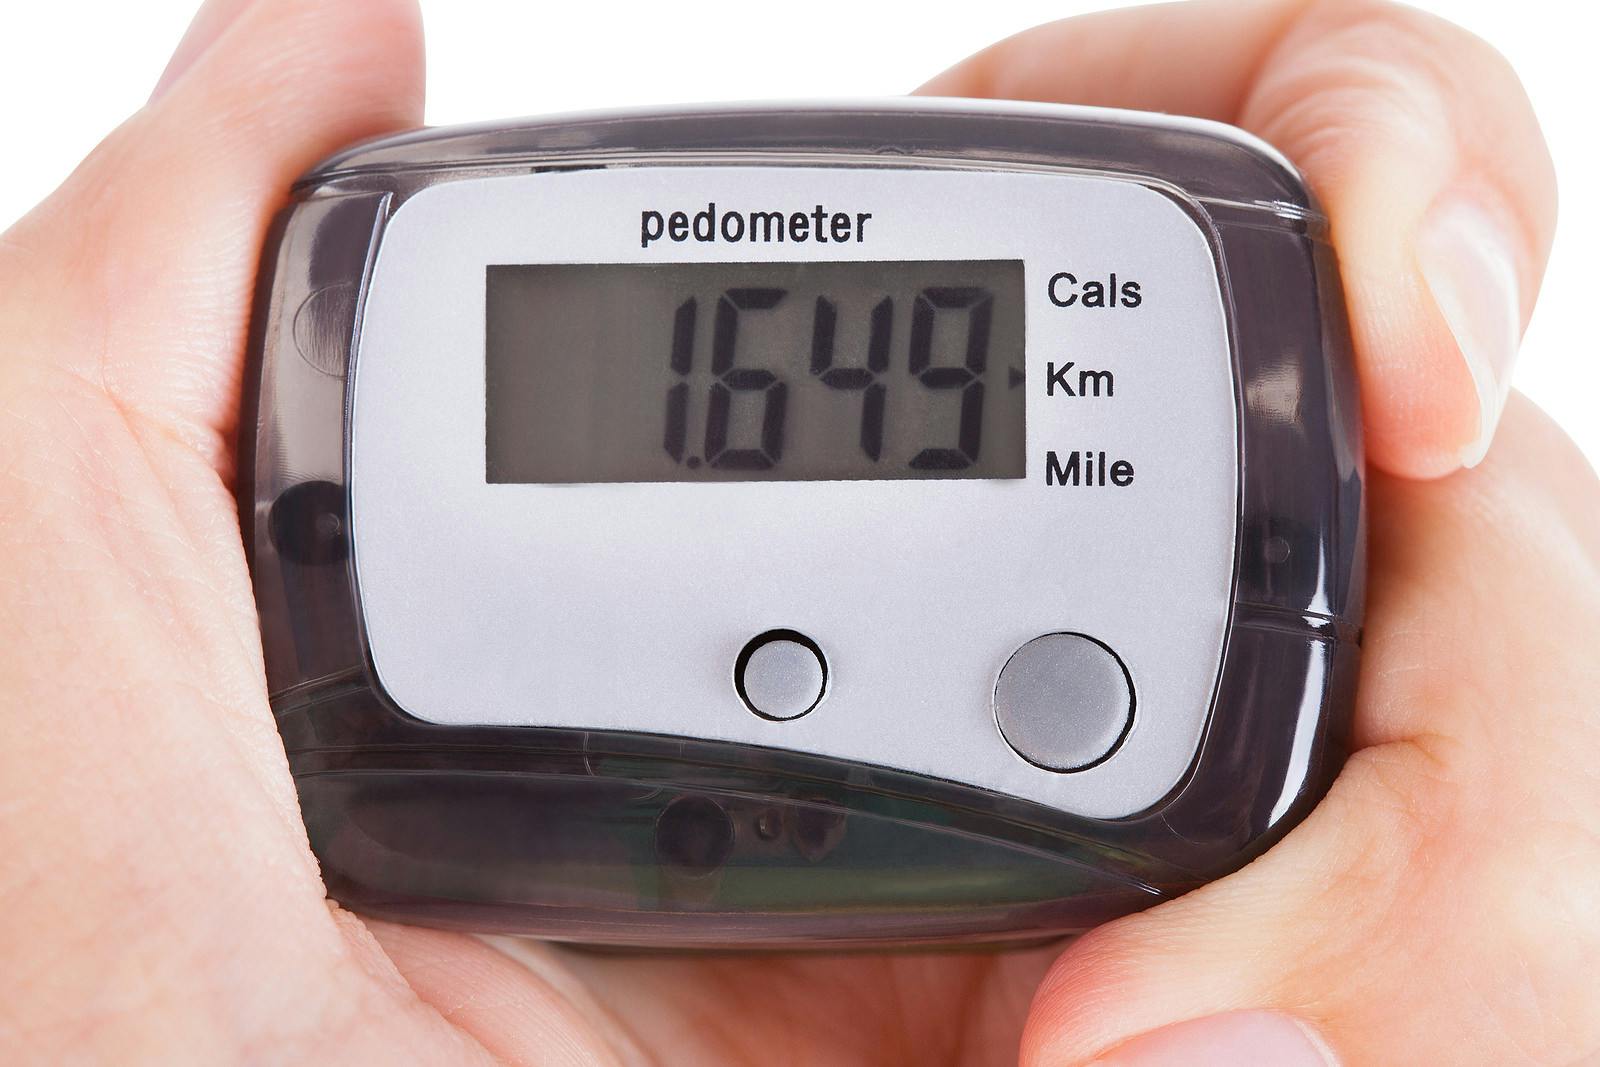 digital pedometer measures step count